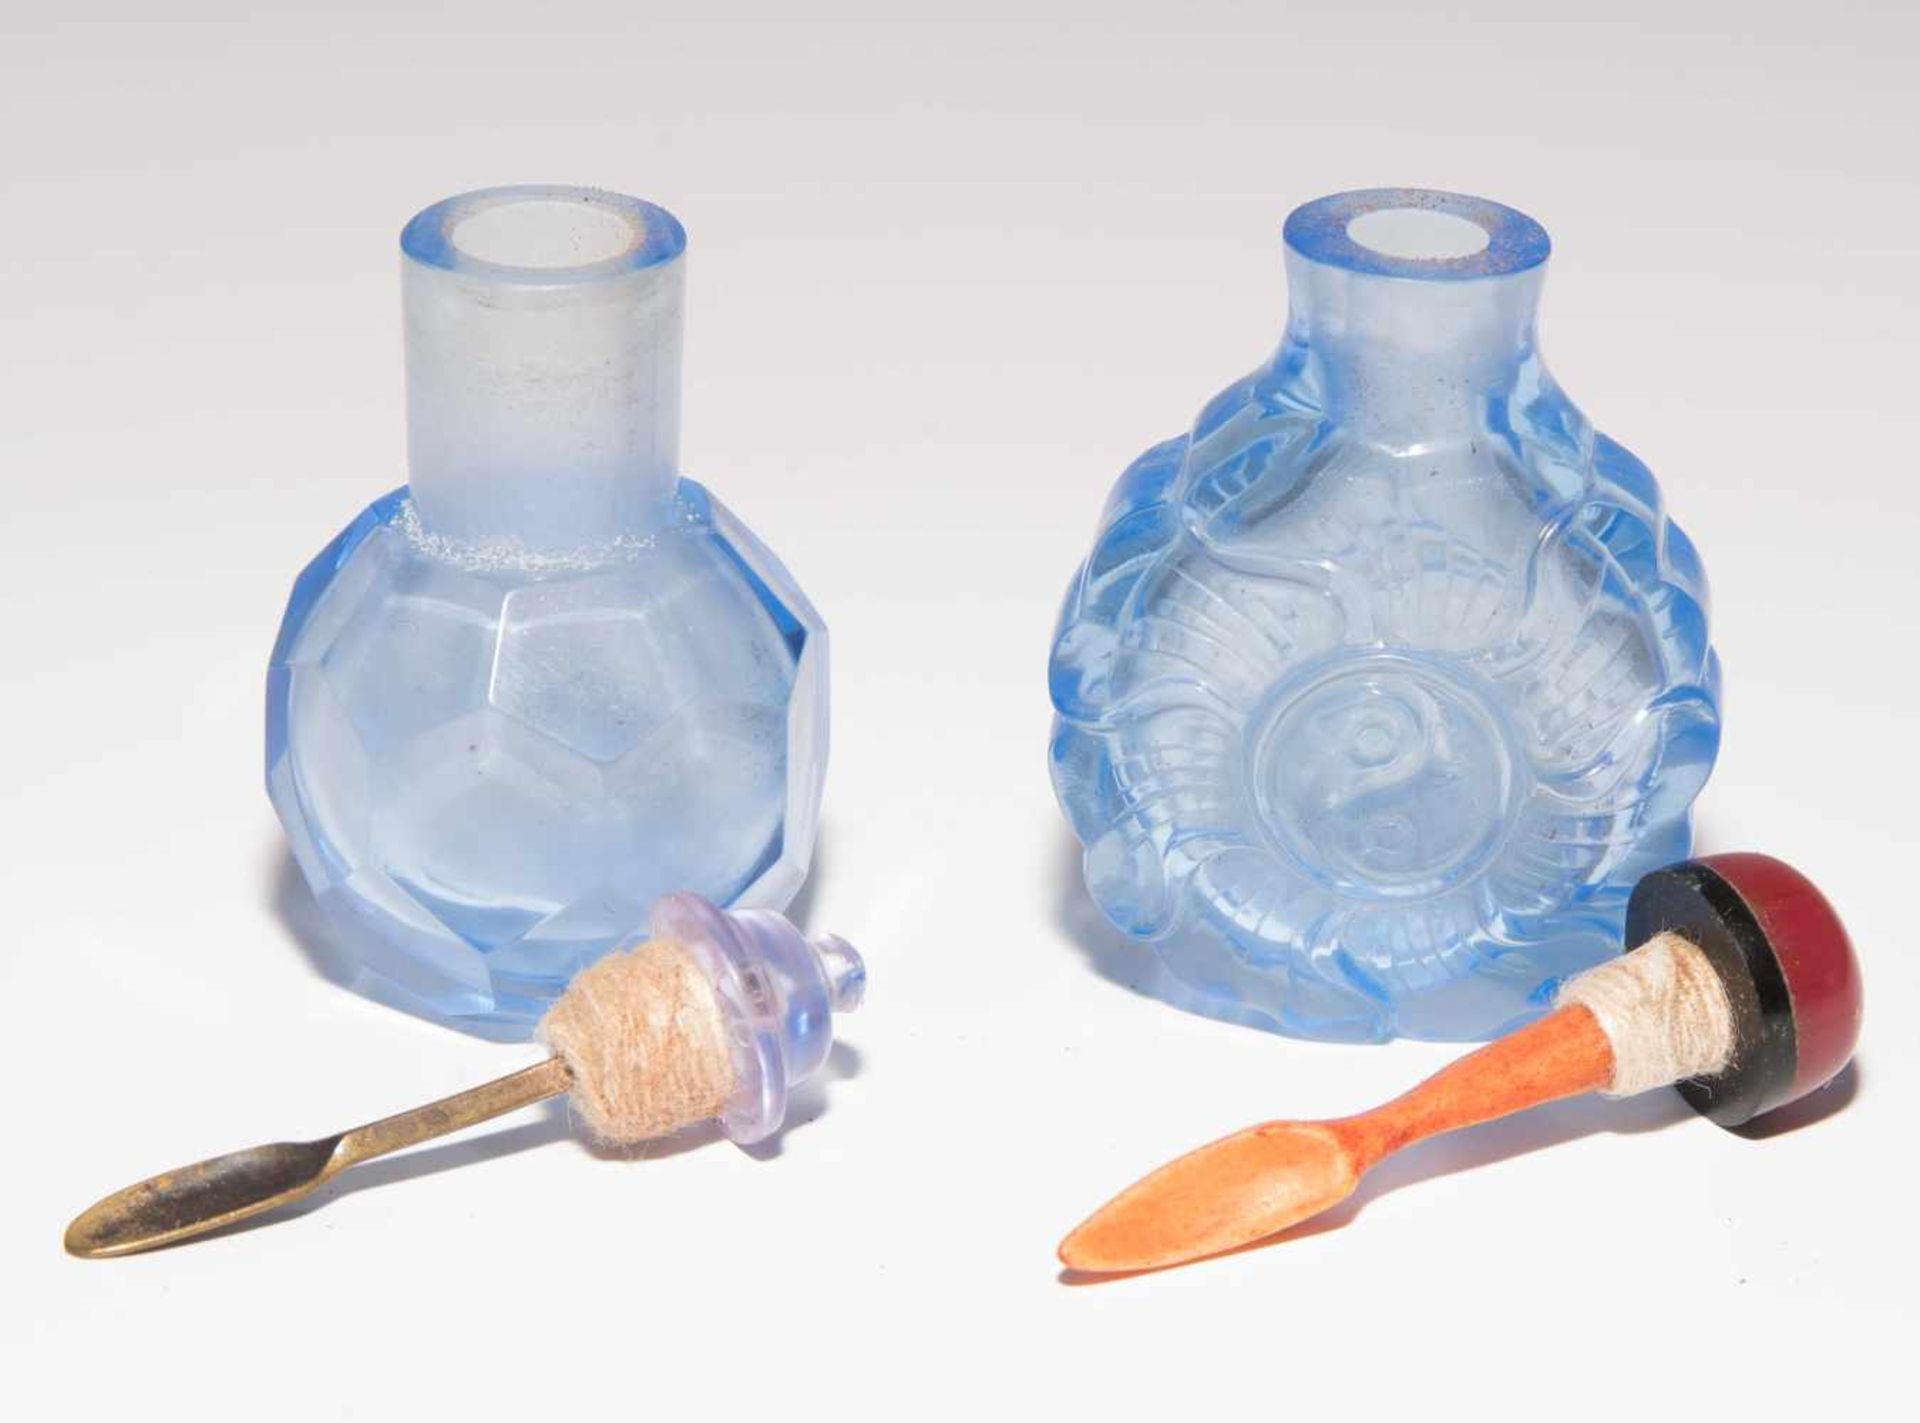 6 Glas Snuff BottlesChina. Hellblaues, transparentes Glas. Ein Doppel-Snuff Bottle, zwei mit - Bild 15 aus 22